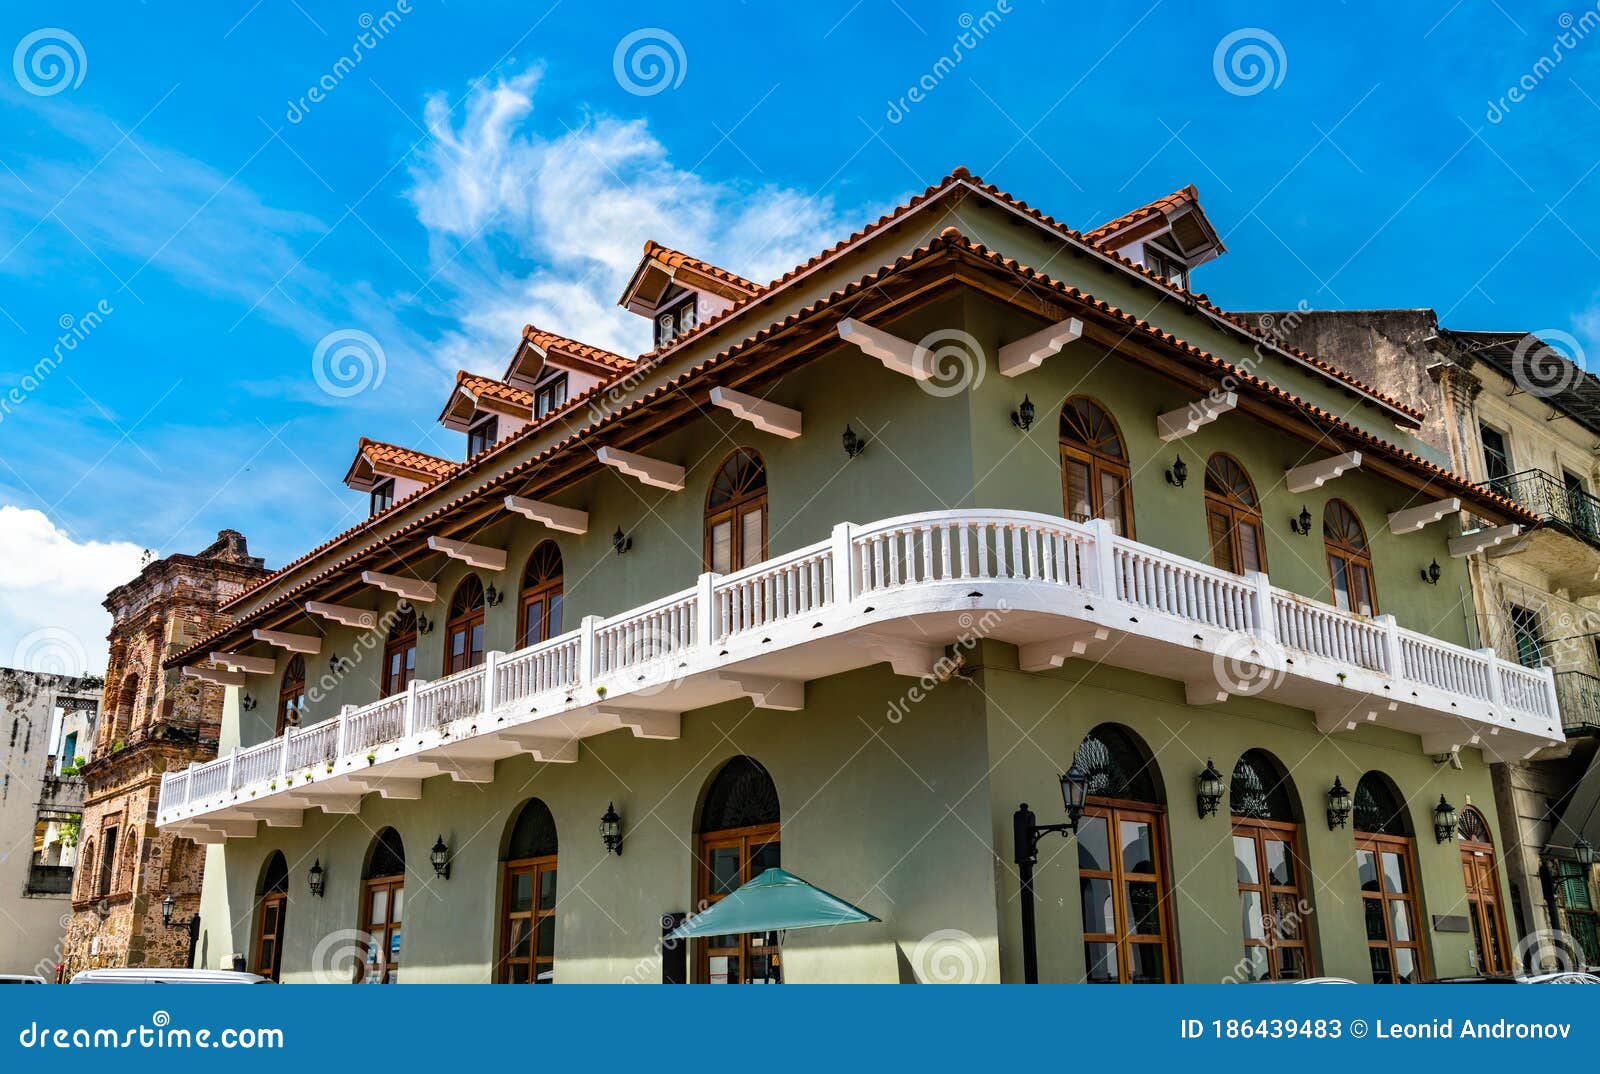 spanish colonial house in casco viejo, panama city